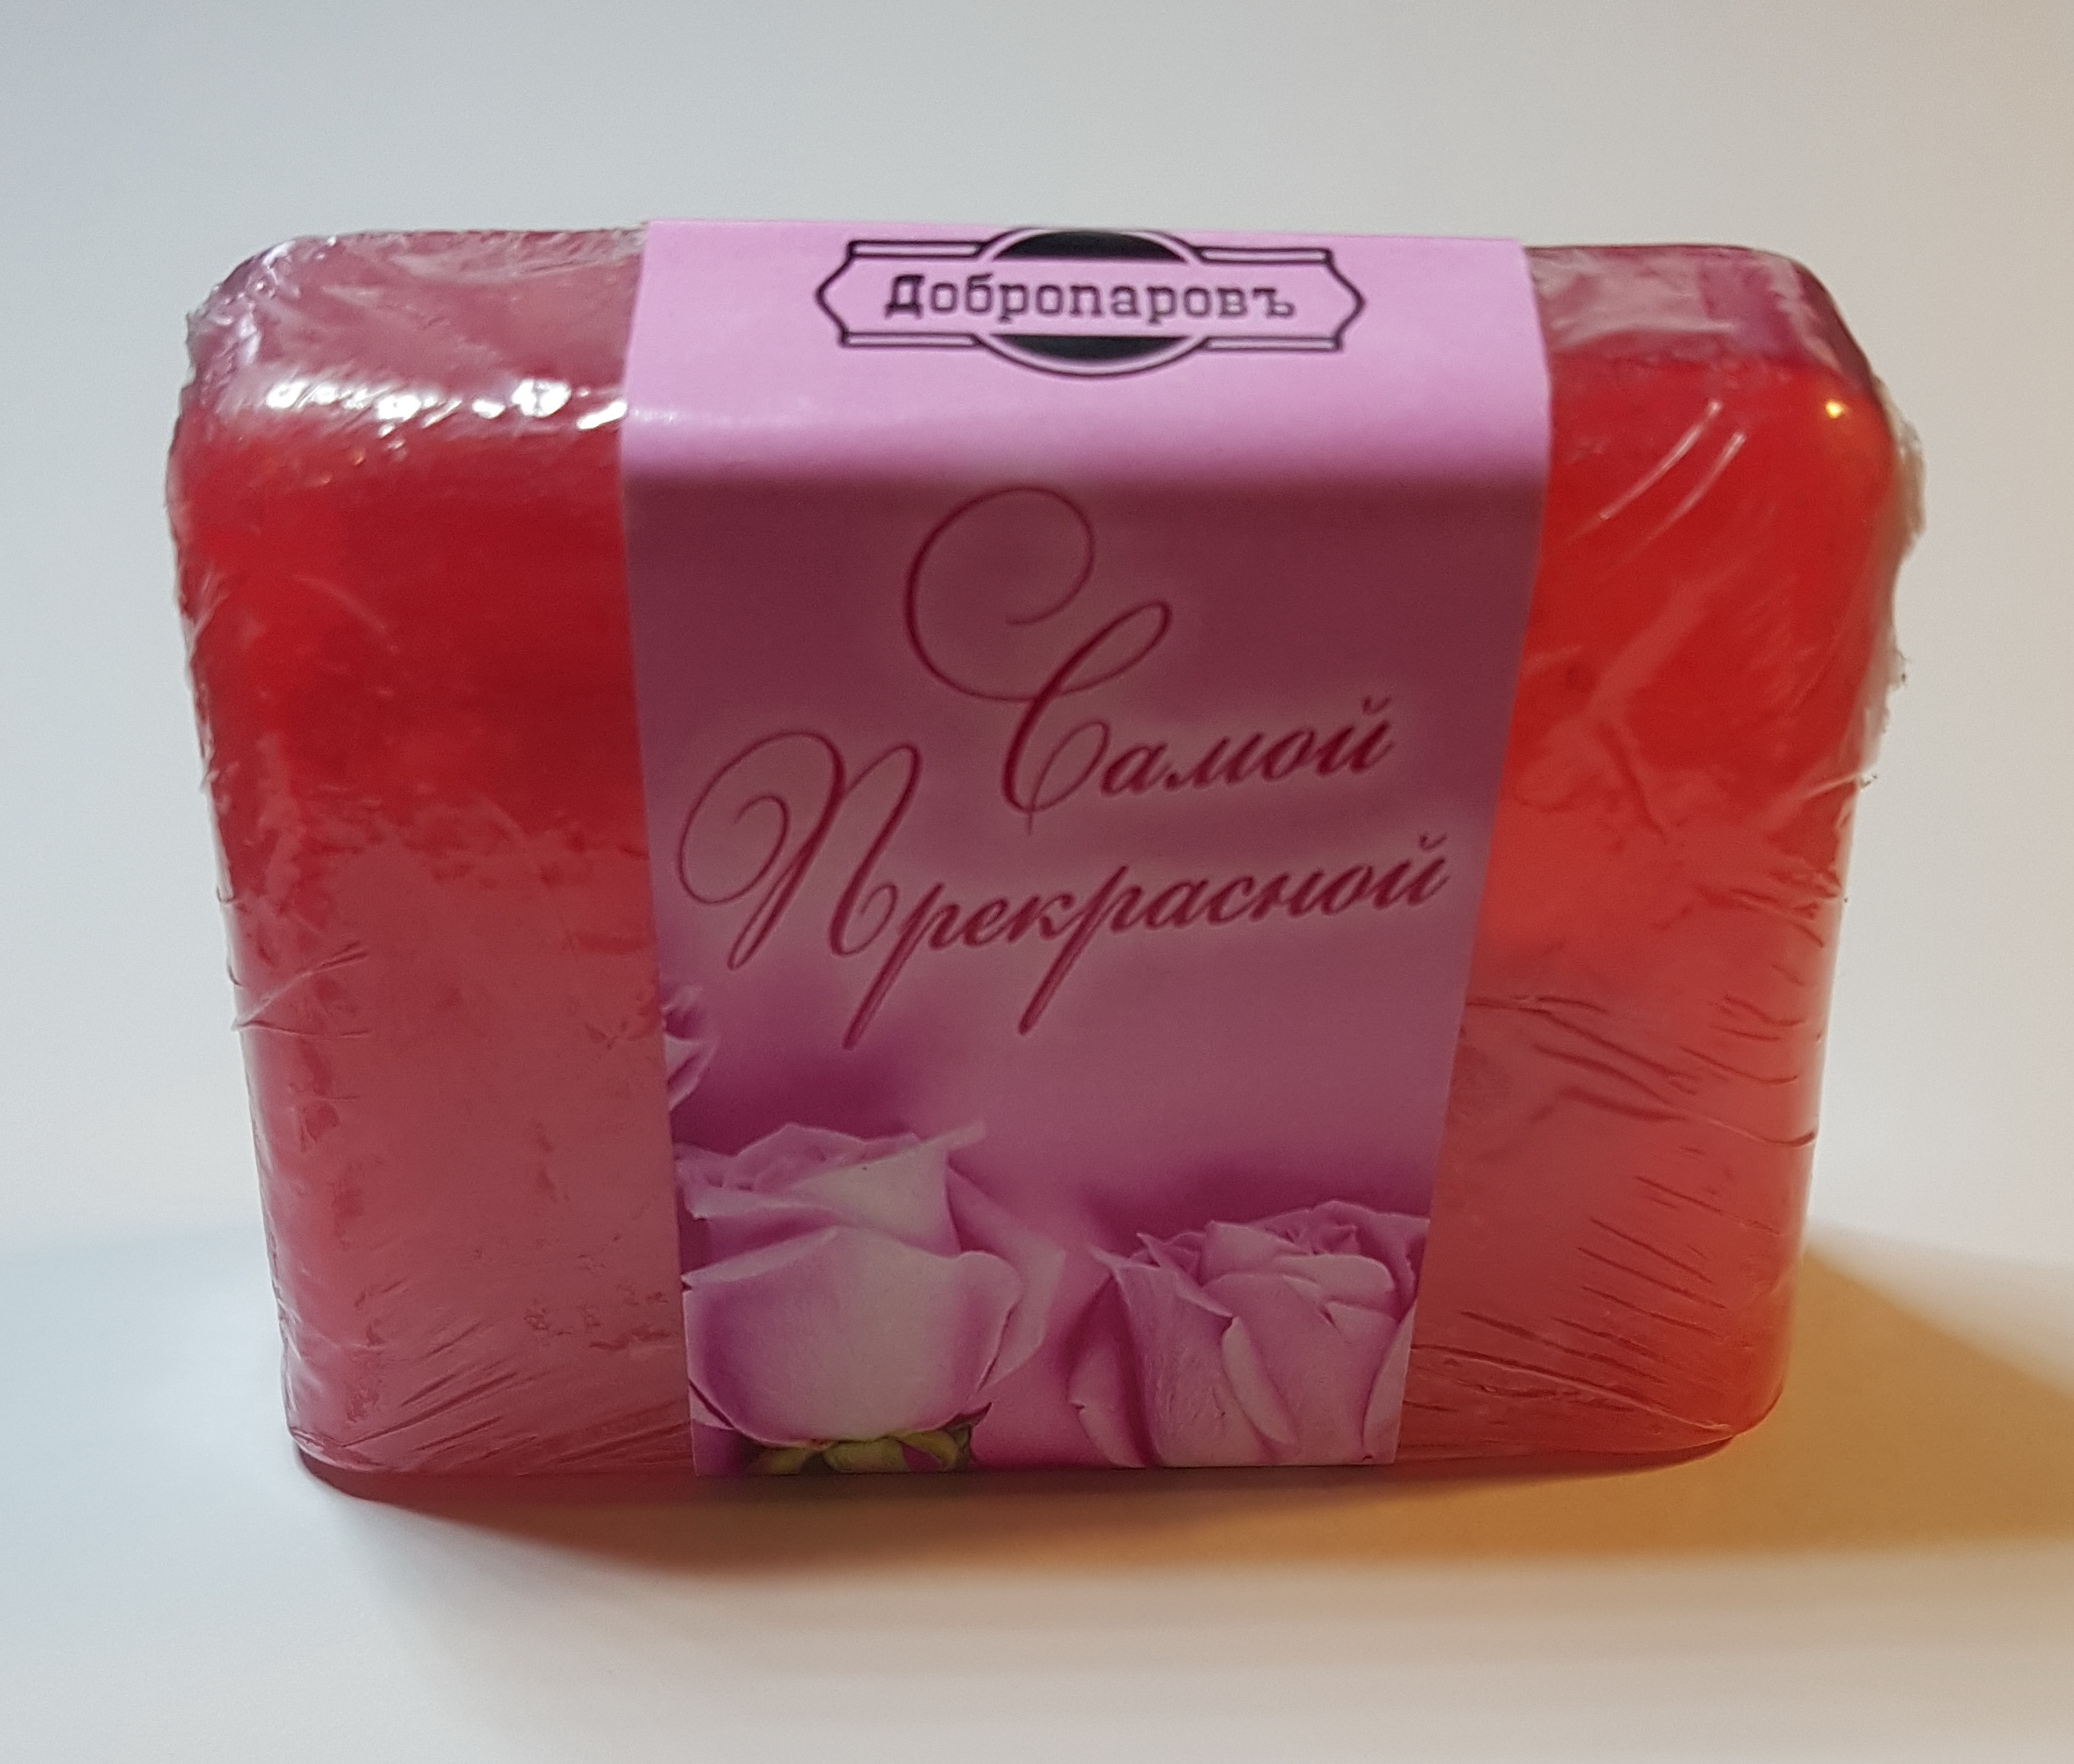 Фотография покупателя товара Косметическое мыло "Самой прекрасной, розочки" аромат малиновые ягоды, "Добропаровъ", 80 гр